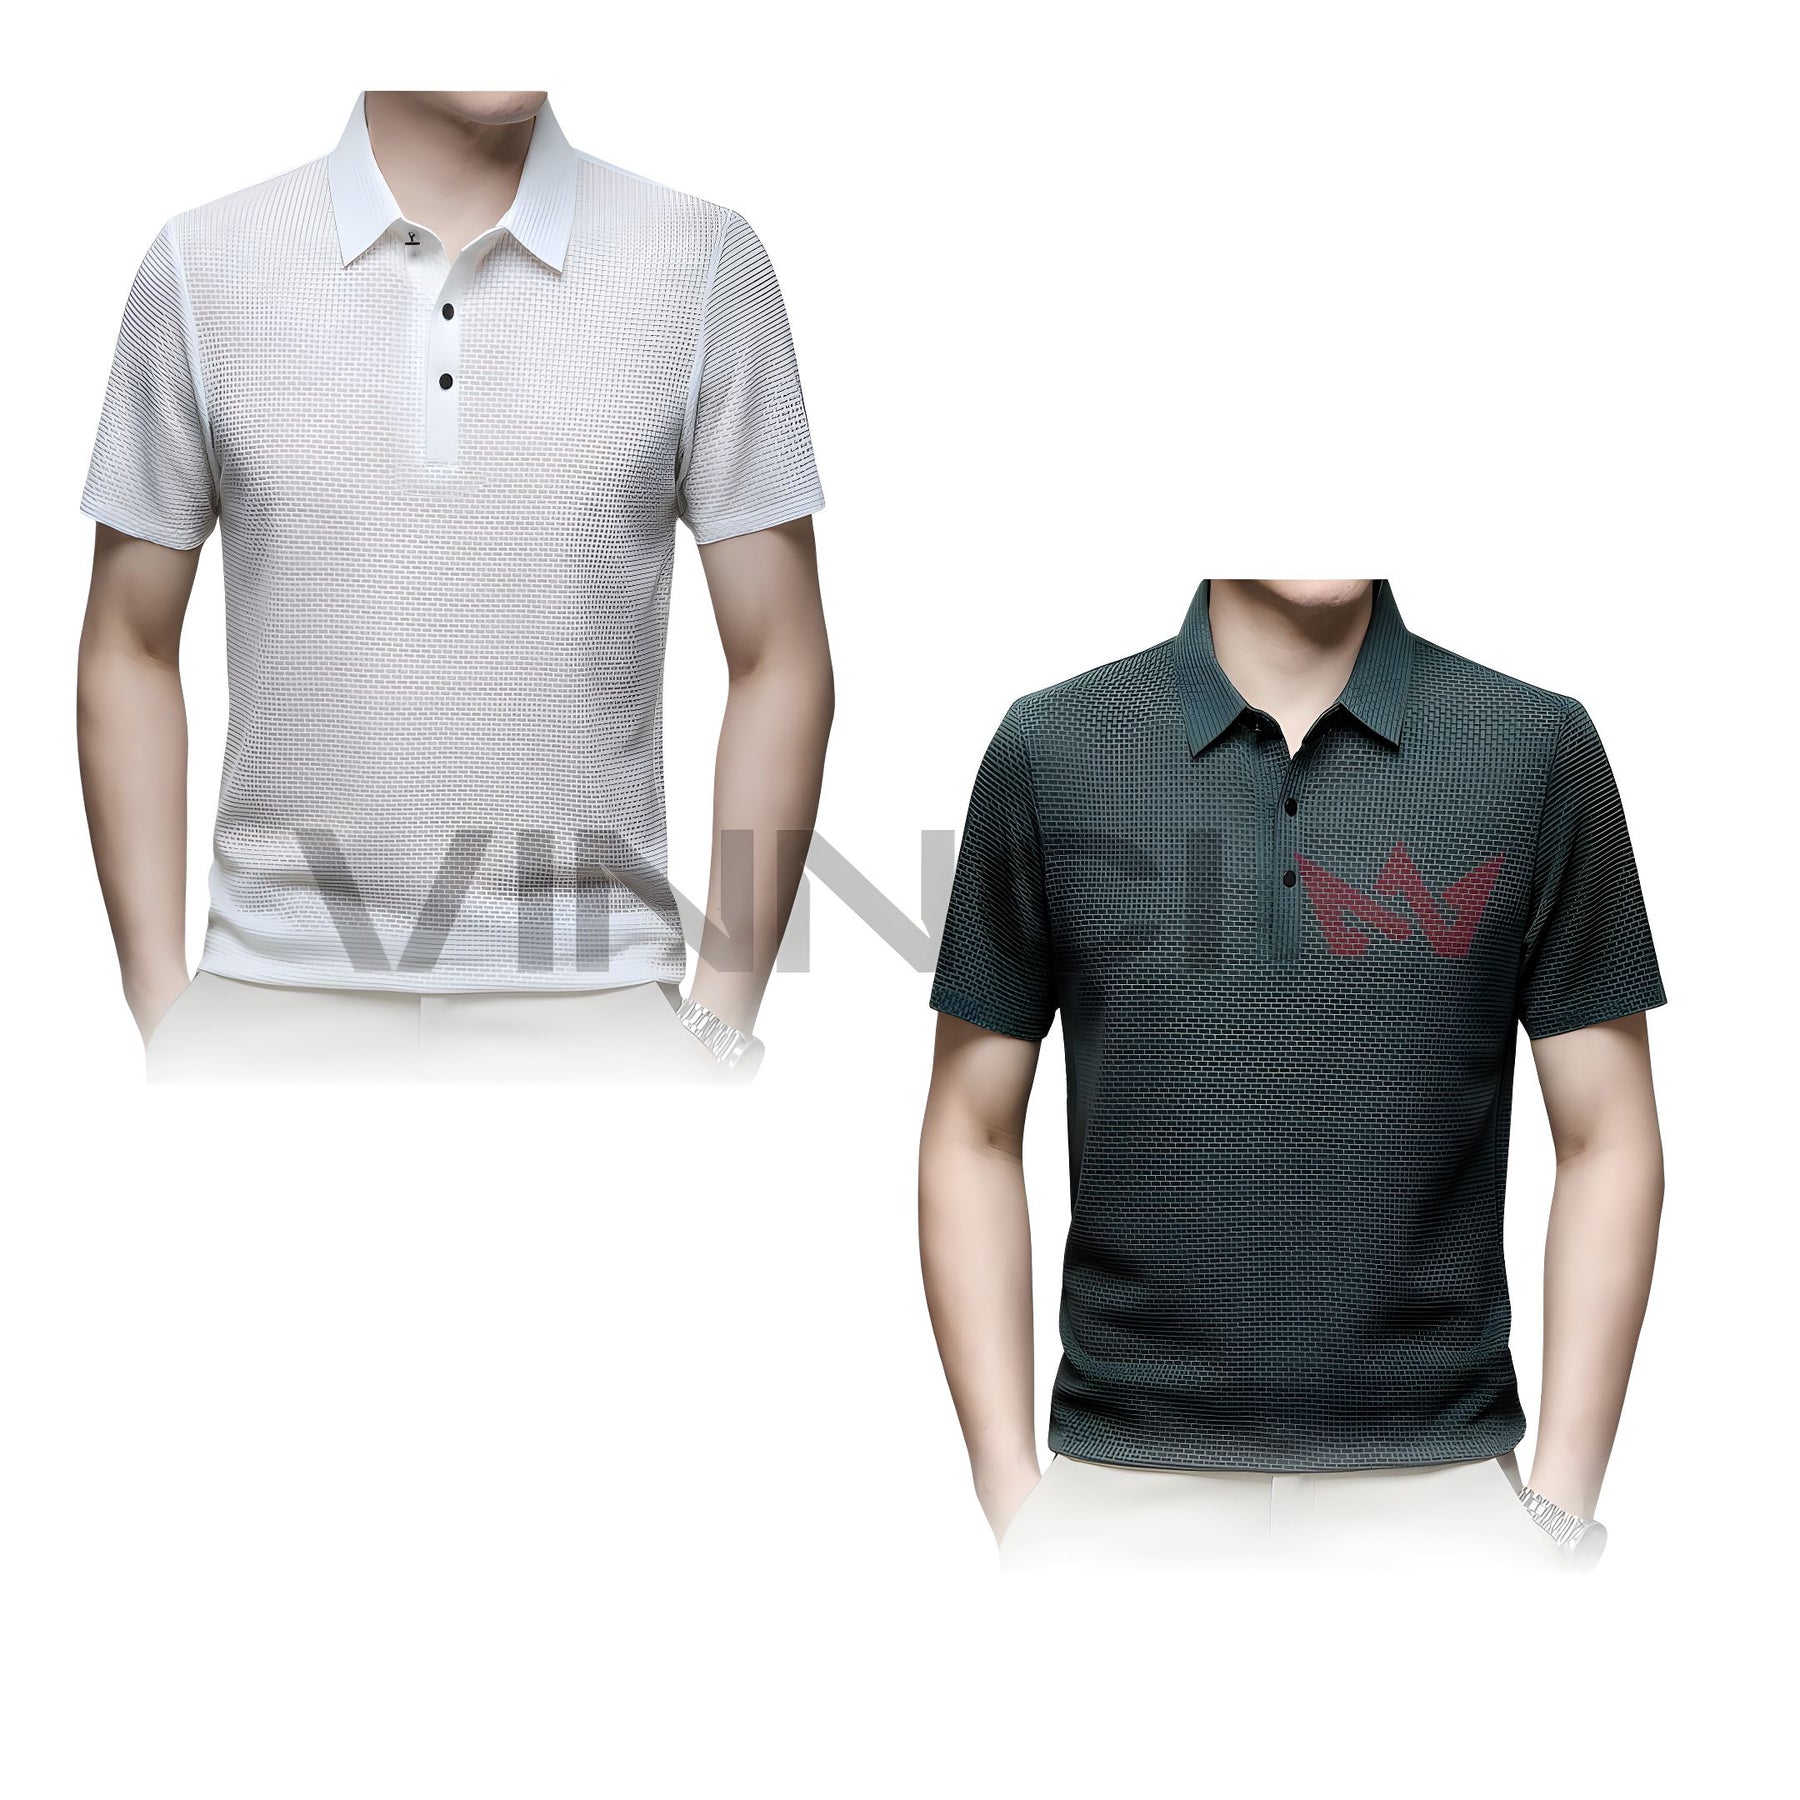 Camisa Polo Premium Texturizada - Conforto e Elegância [Compre 1, Leve 2] Camisa Polo Premium Texturizada - Conforto e Elegância [Compre 1, Leve 2] VINNCI Store Verde Branco P